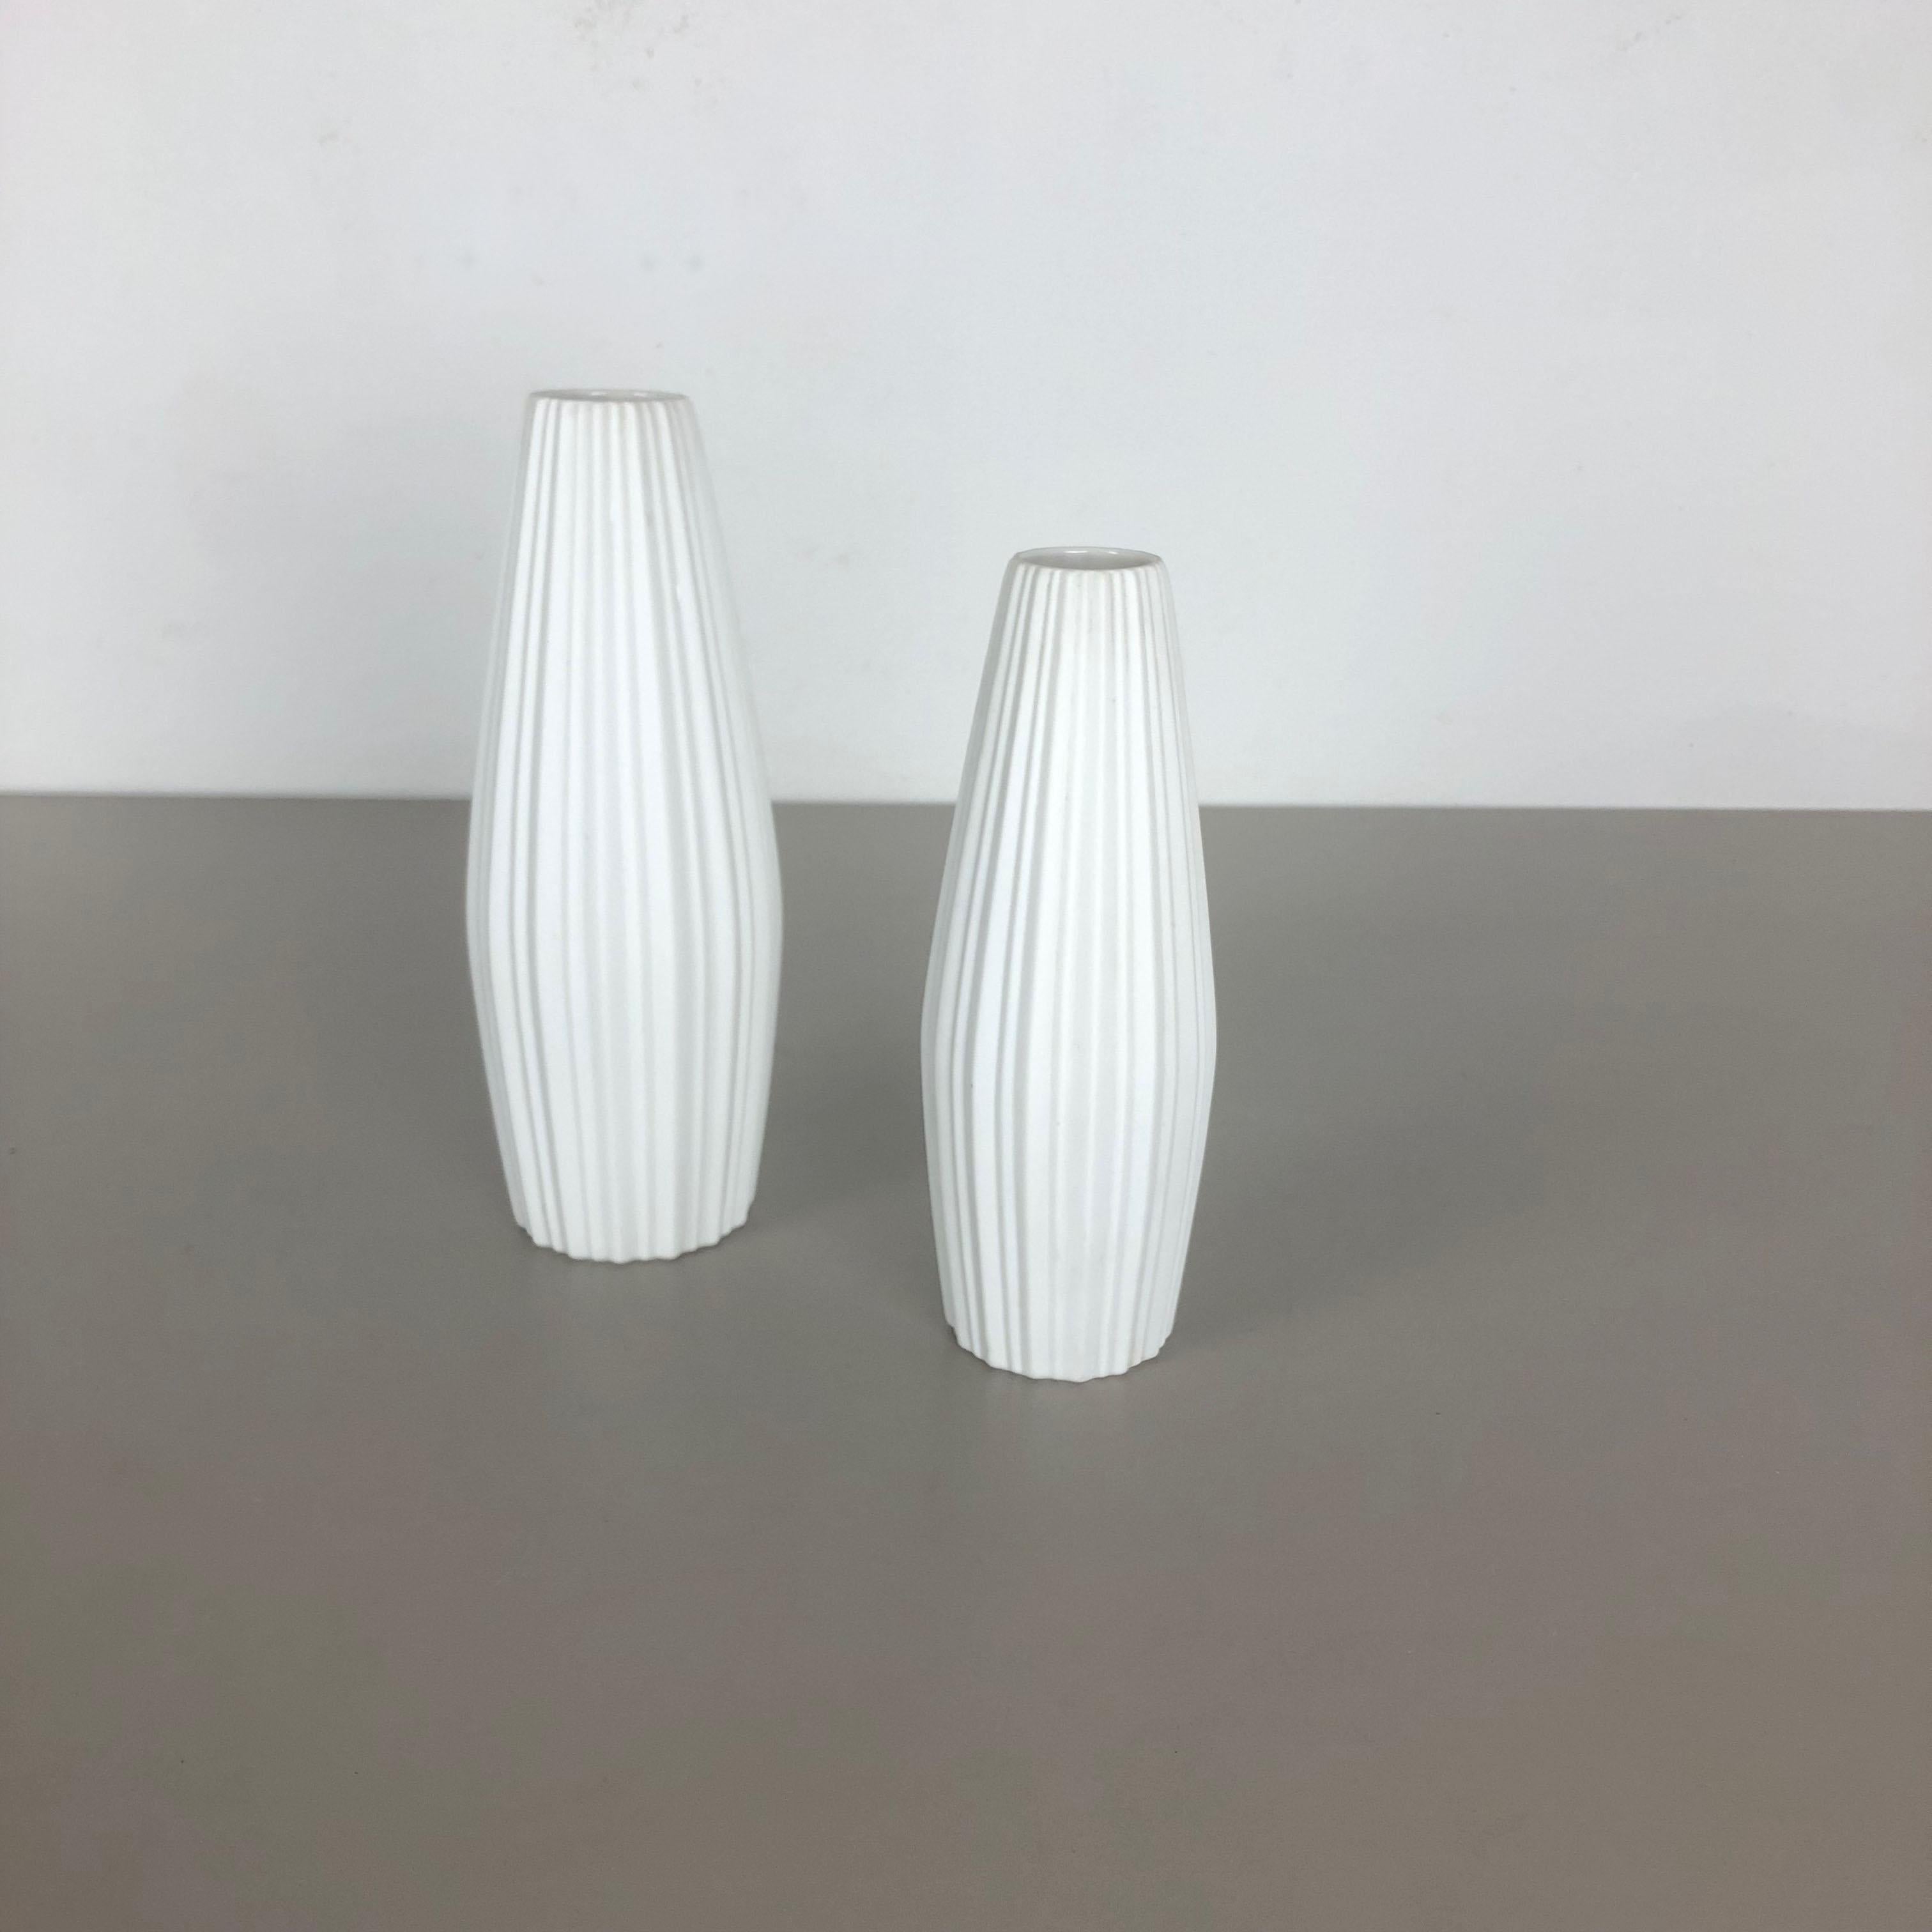 Article :

Ensemble de 2 vases en porcelaine Op Art


Producteur :

Heinrich Selb Bavière, Allemagne


Décennie :

1970s



Ce vase Op Art vintage original a été produit dans les années 1970 en Allemagne. Il est fait de porcelaine